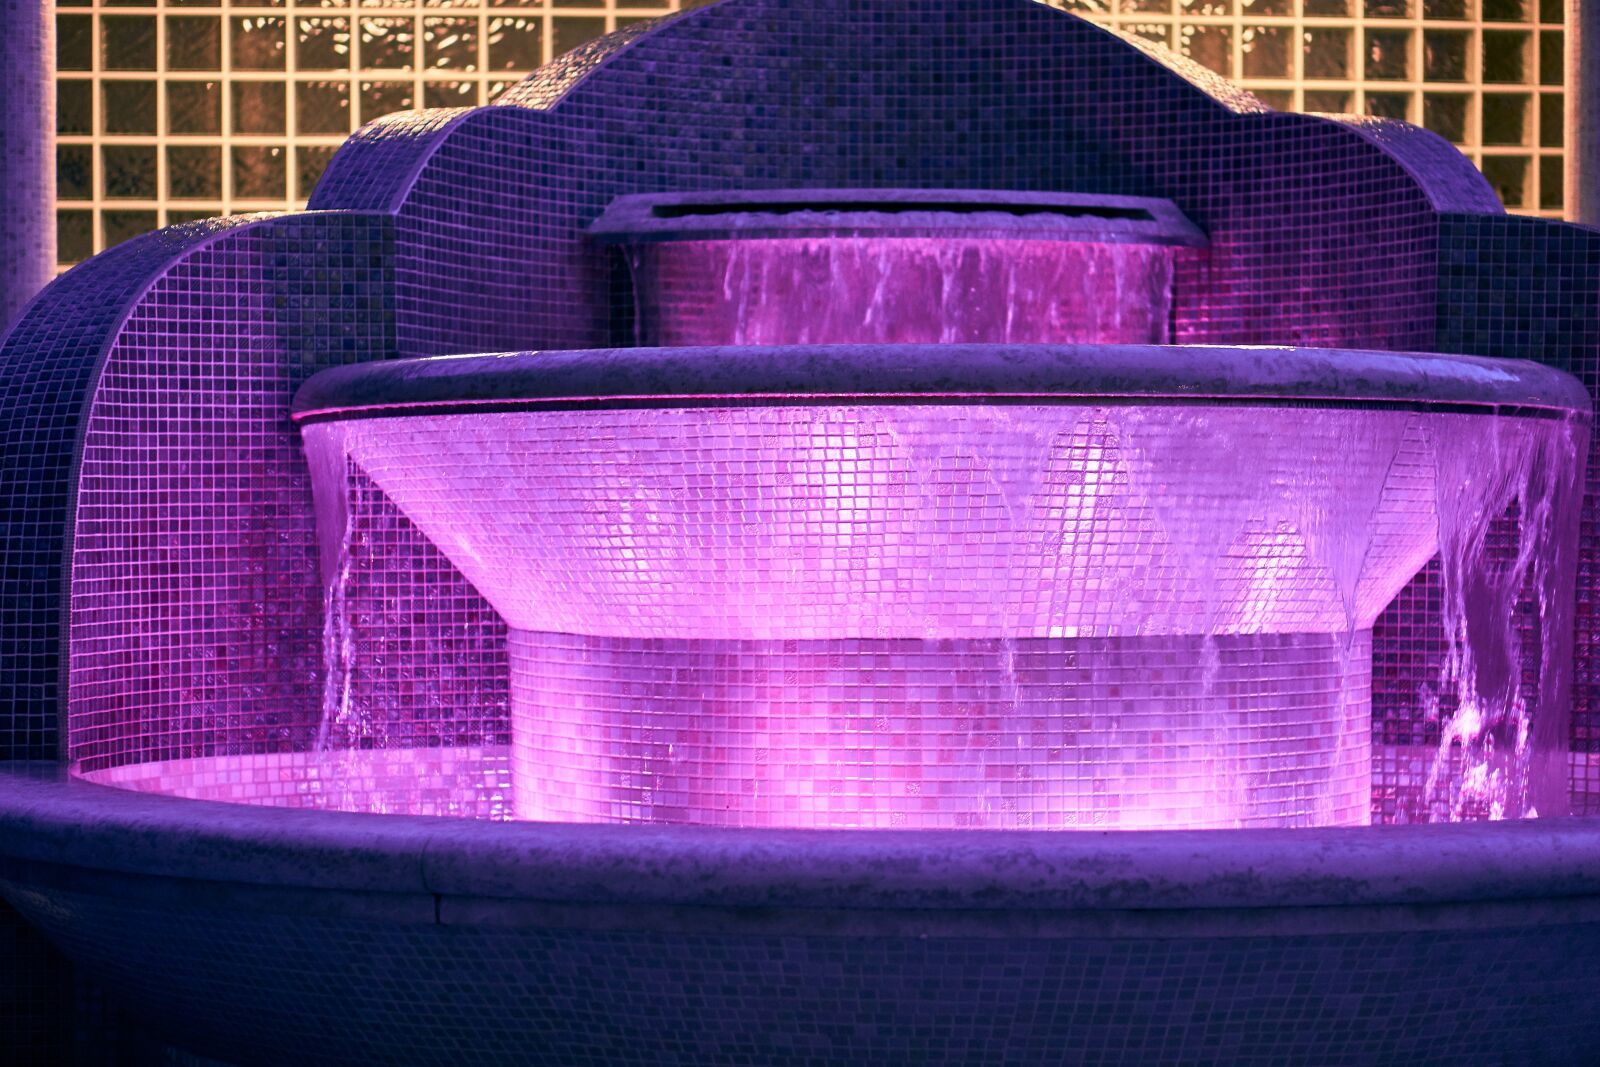 Sony E 50mm F1.8 OSS sample photo. Fountain, illuminated, decoration photography